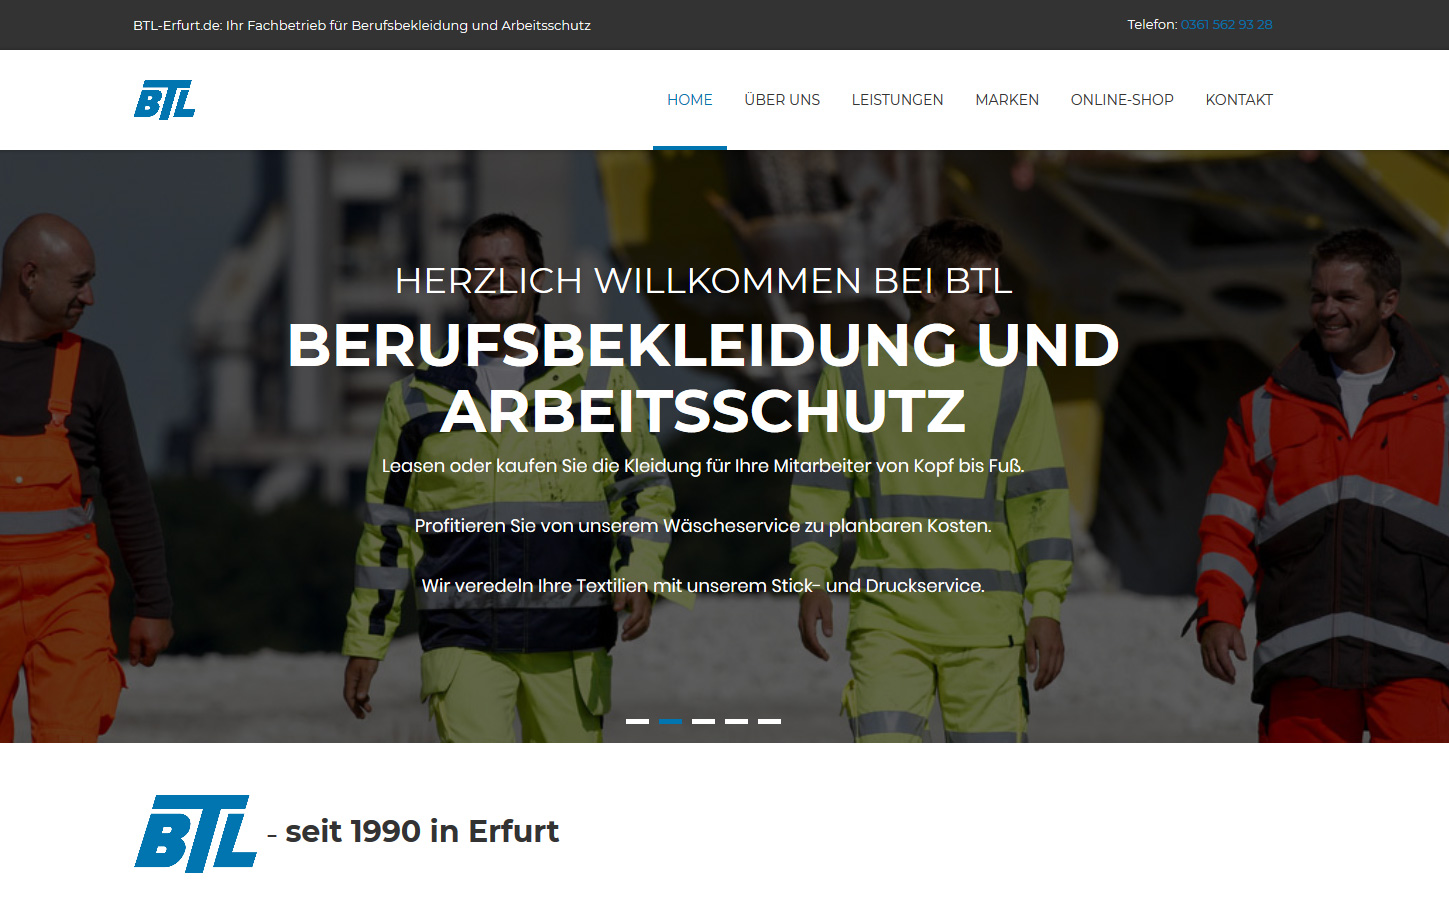 btl-erfurt.de ‐ Berufsbekleidung und Arbeitsschutz